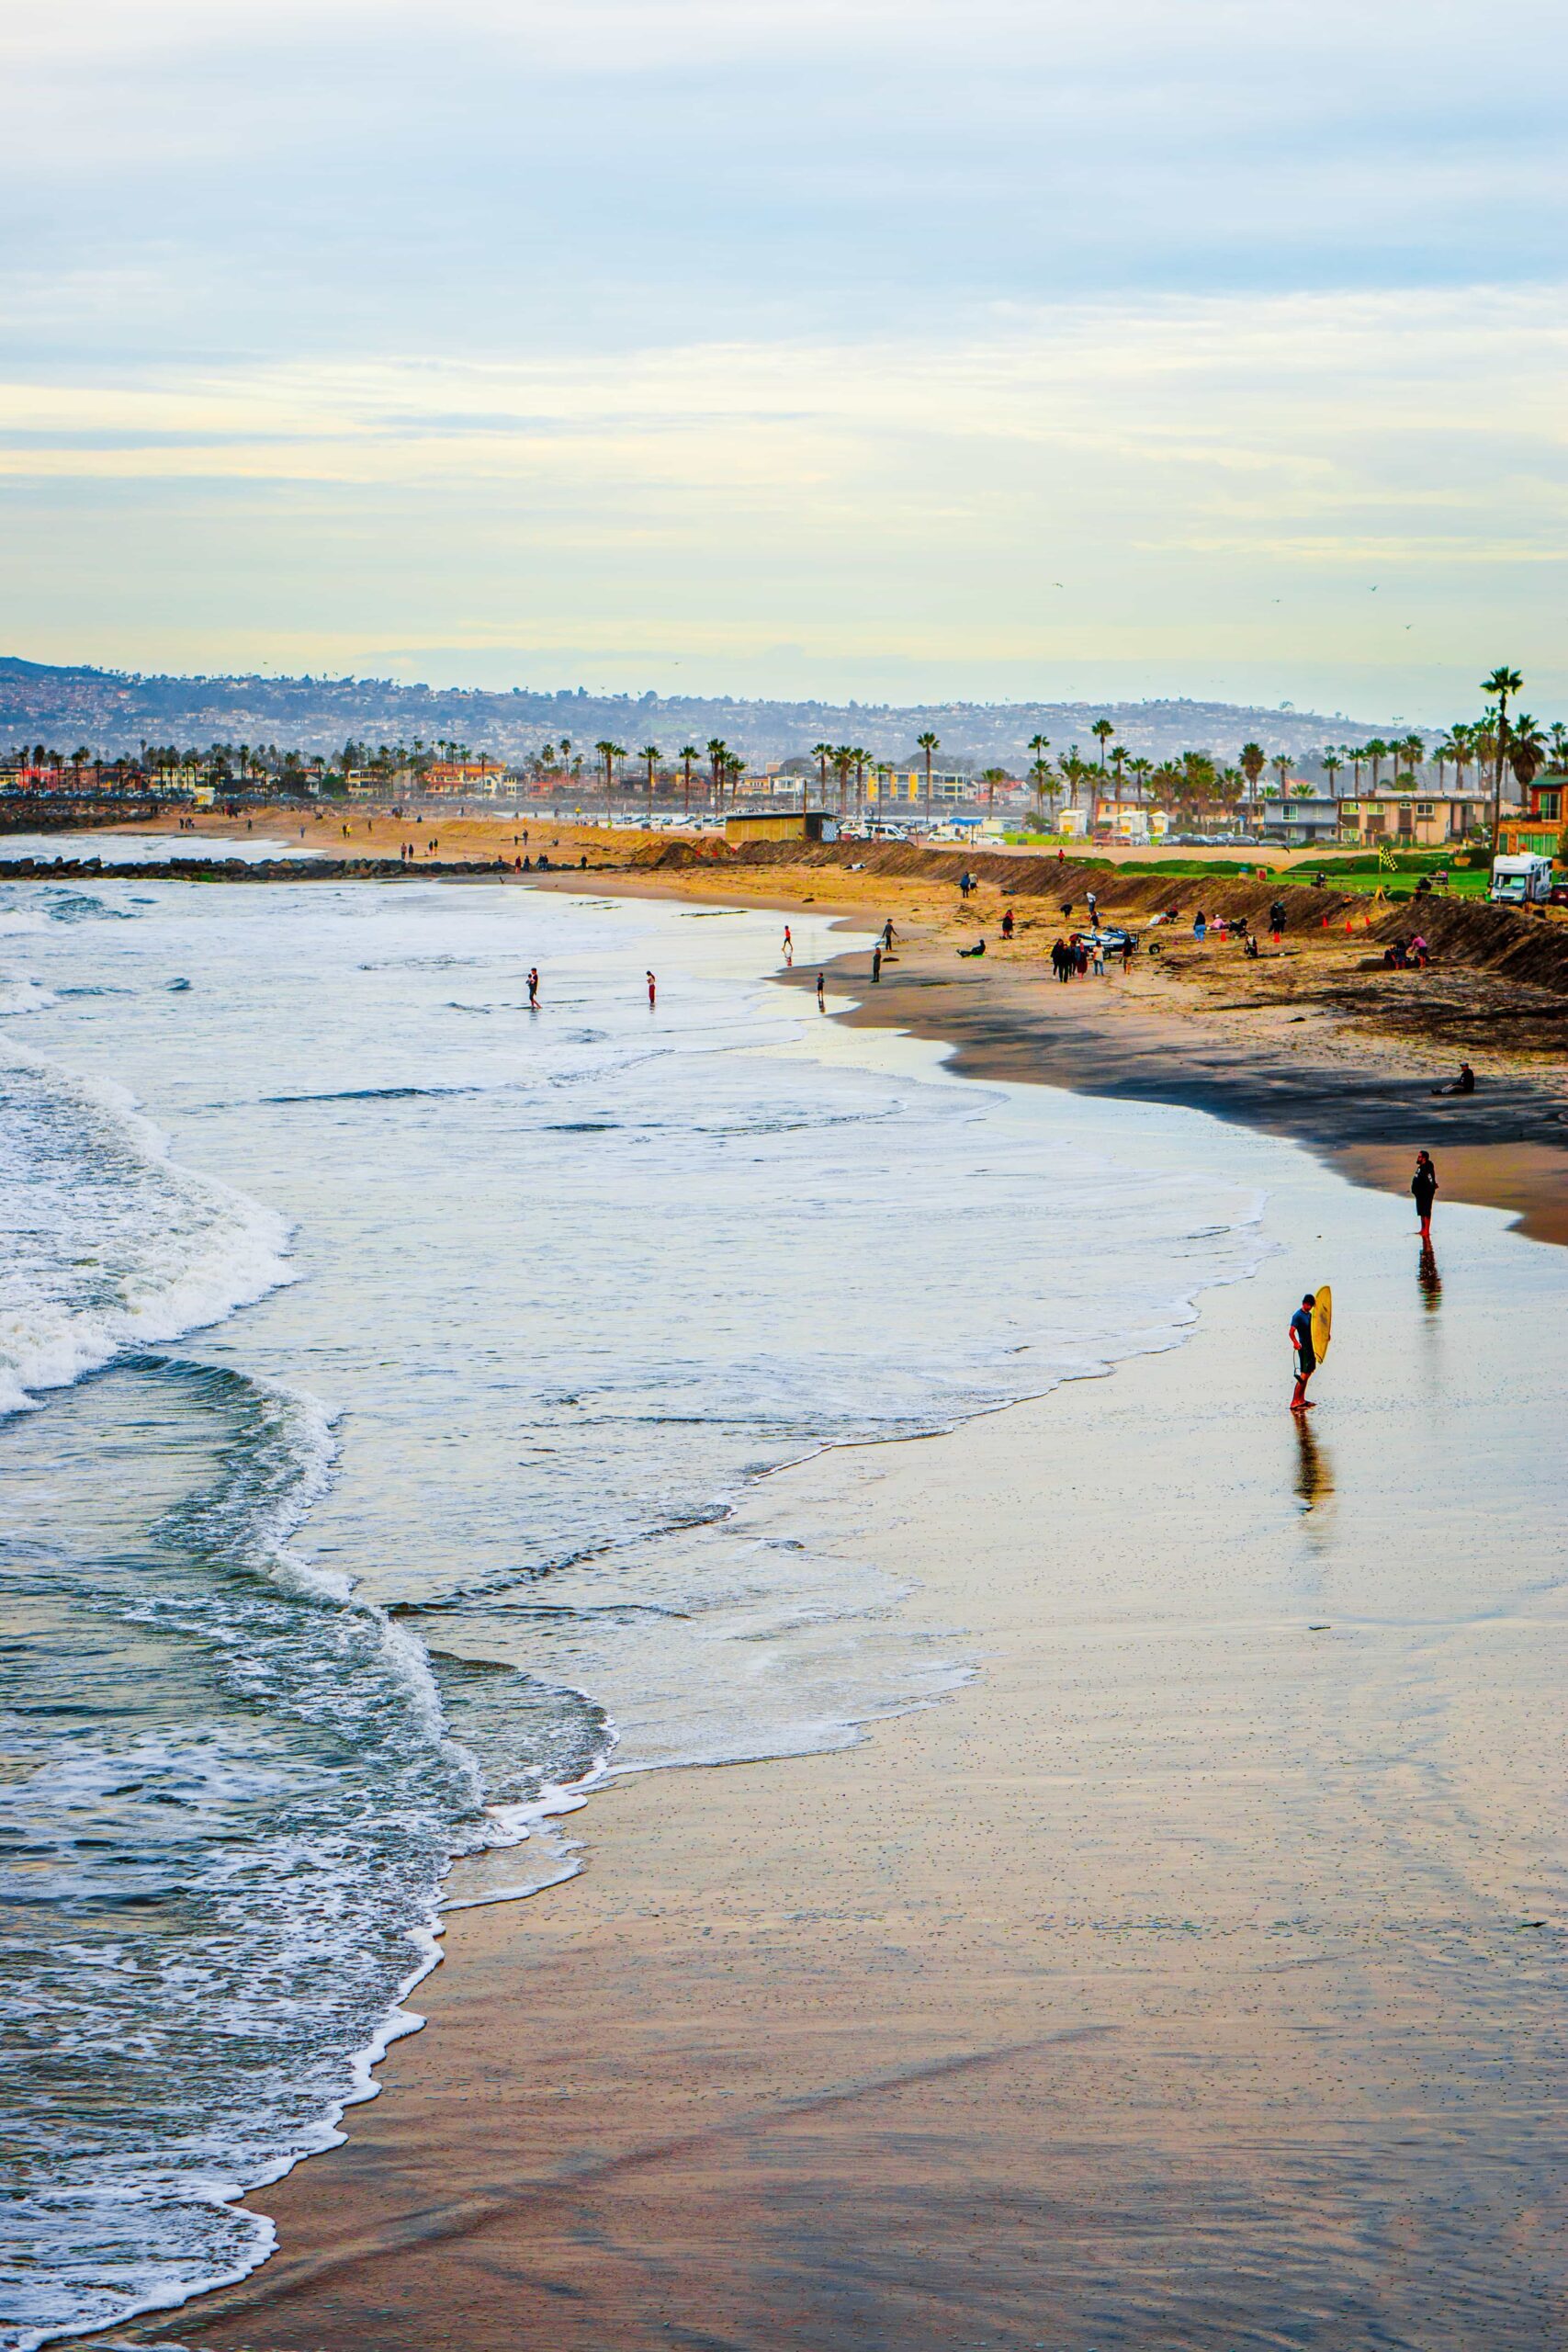 San Diego, California skyline and beach.